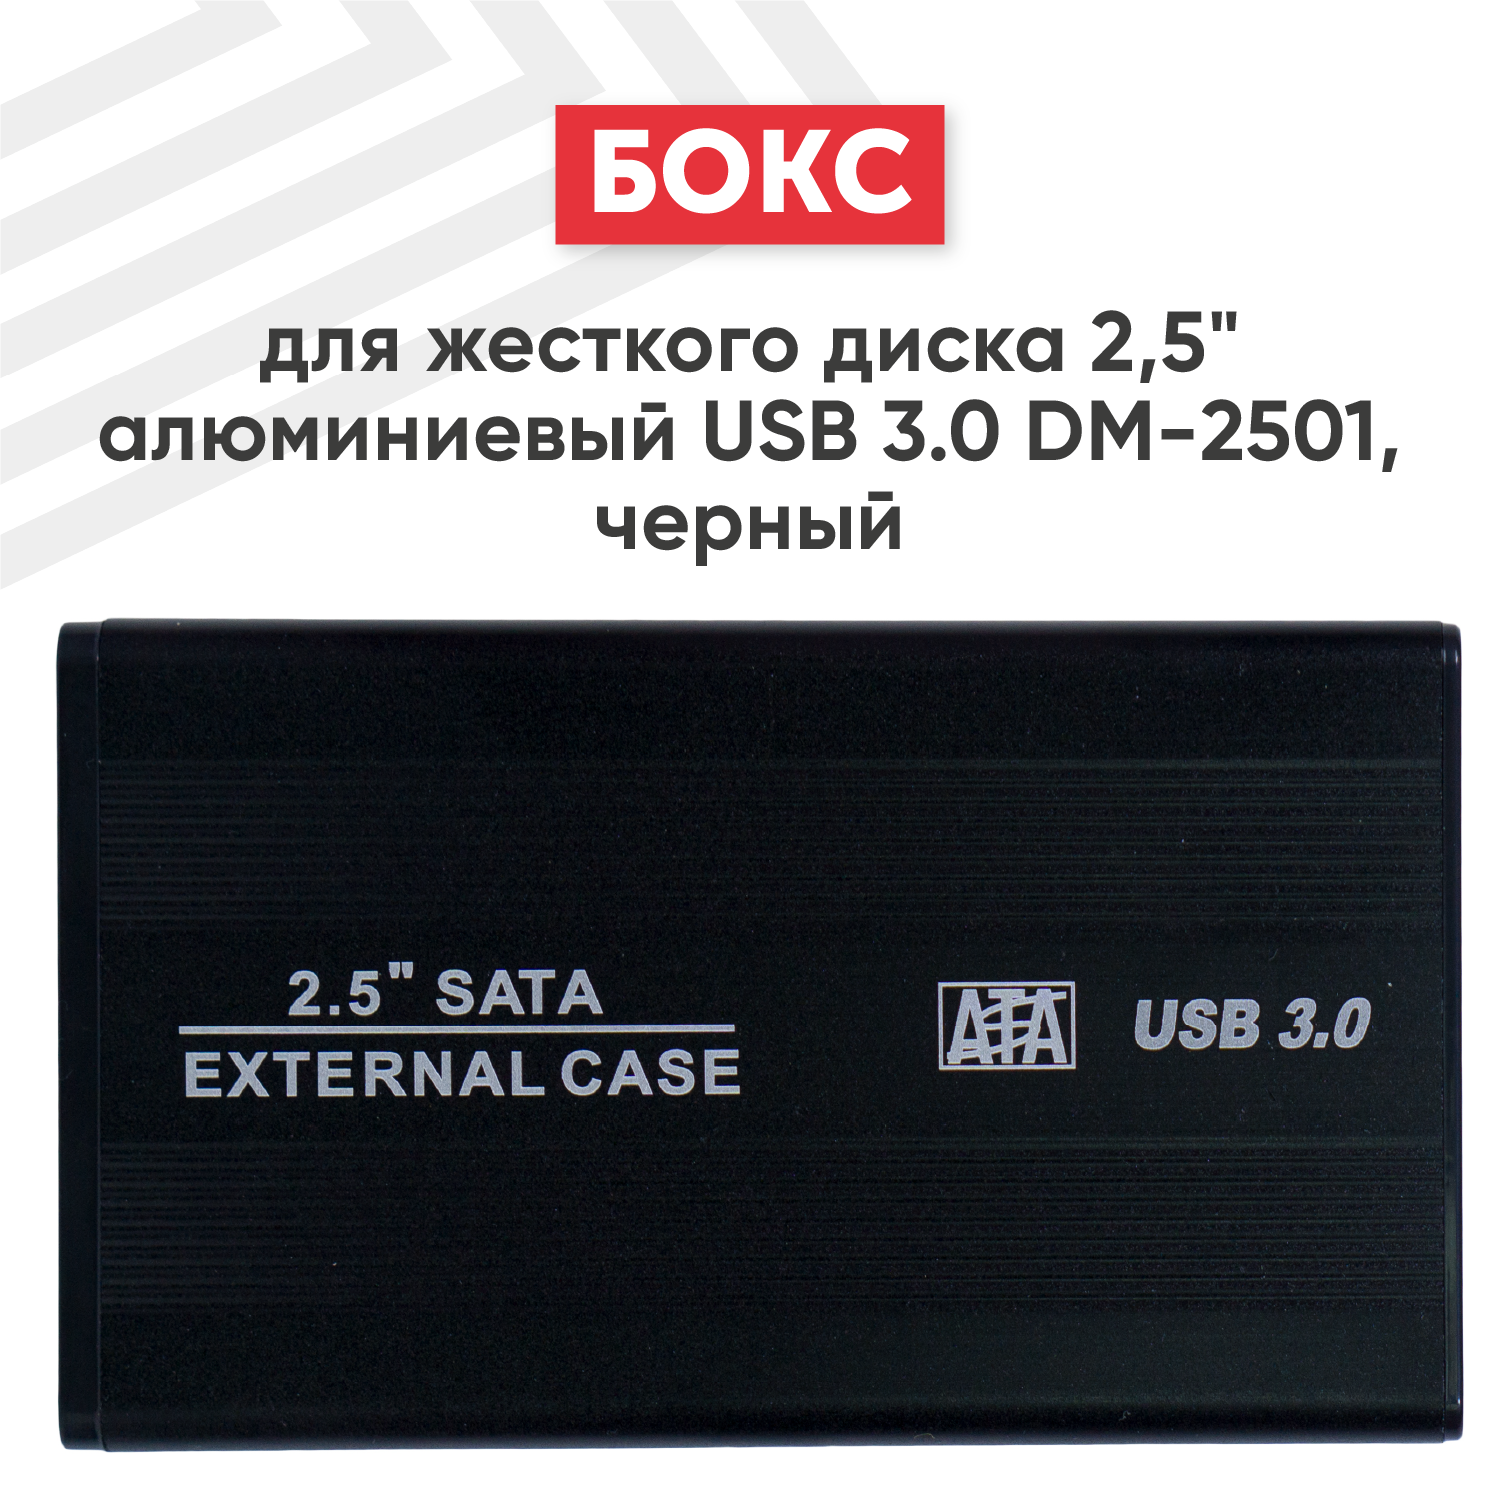 Бокс для жесткого диска 2.5" алюминиевый USB 3.0 DM-2501 черный